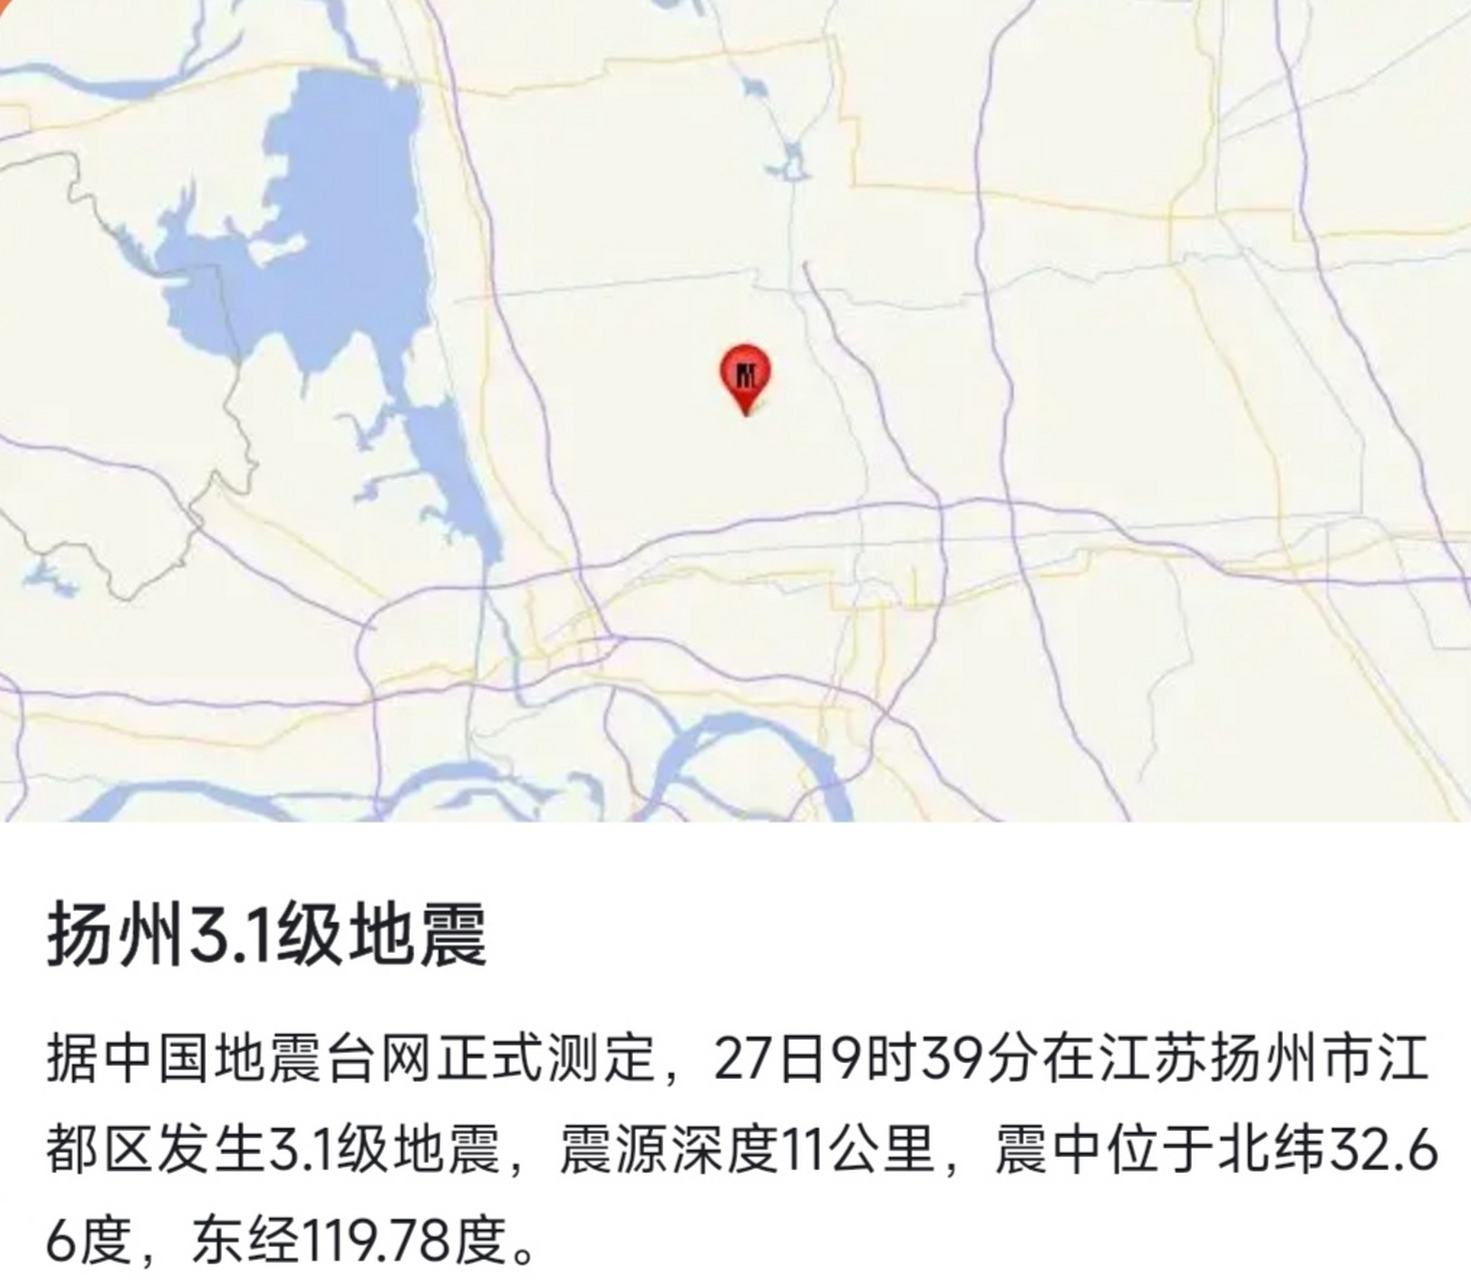 江苏扬州地震了